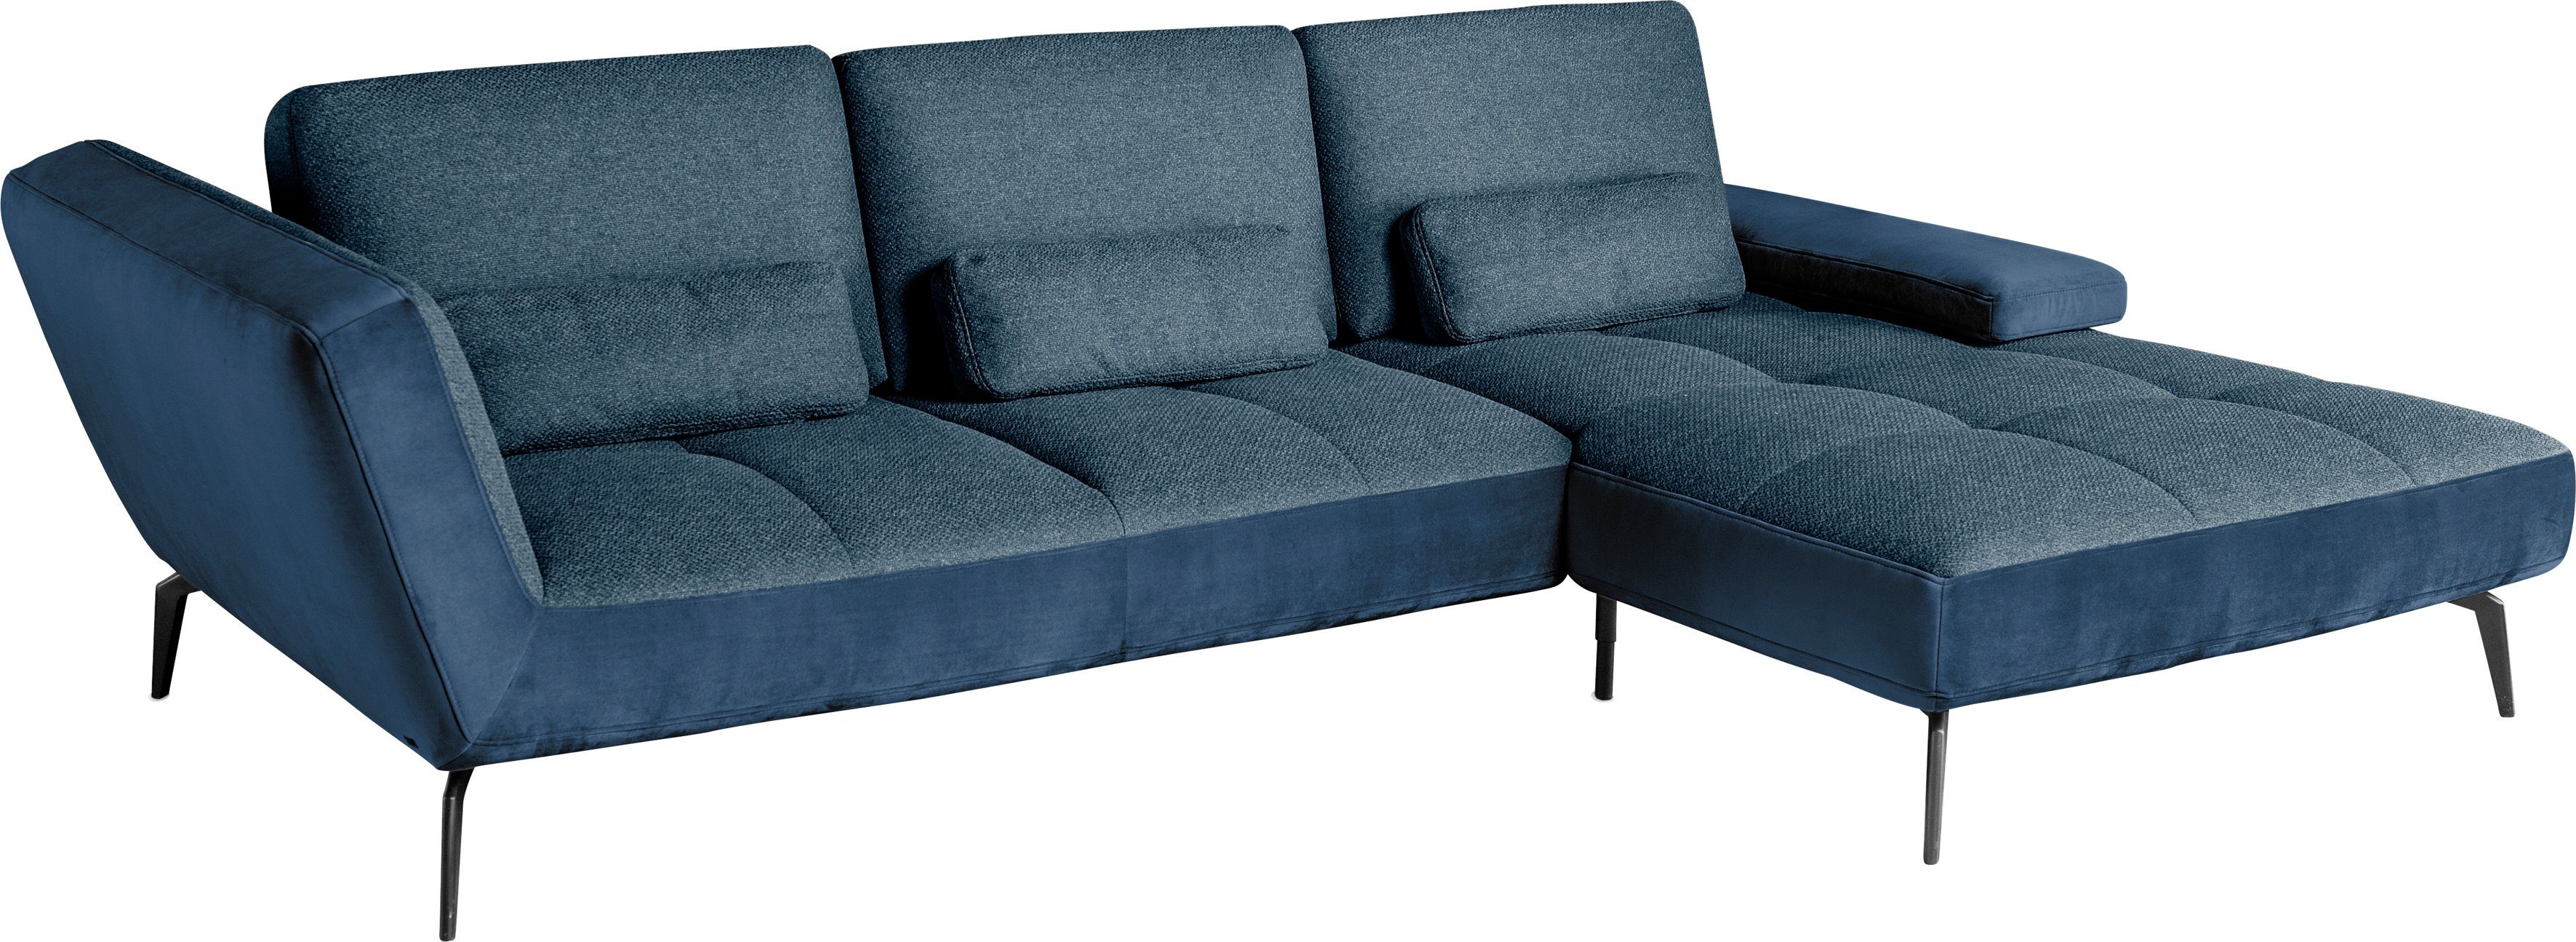 SO Musterring 4300, by Sitztiefenverstellung set Ecksofa dunkelblau49/blau81 Nierenkissen und inklusive one